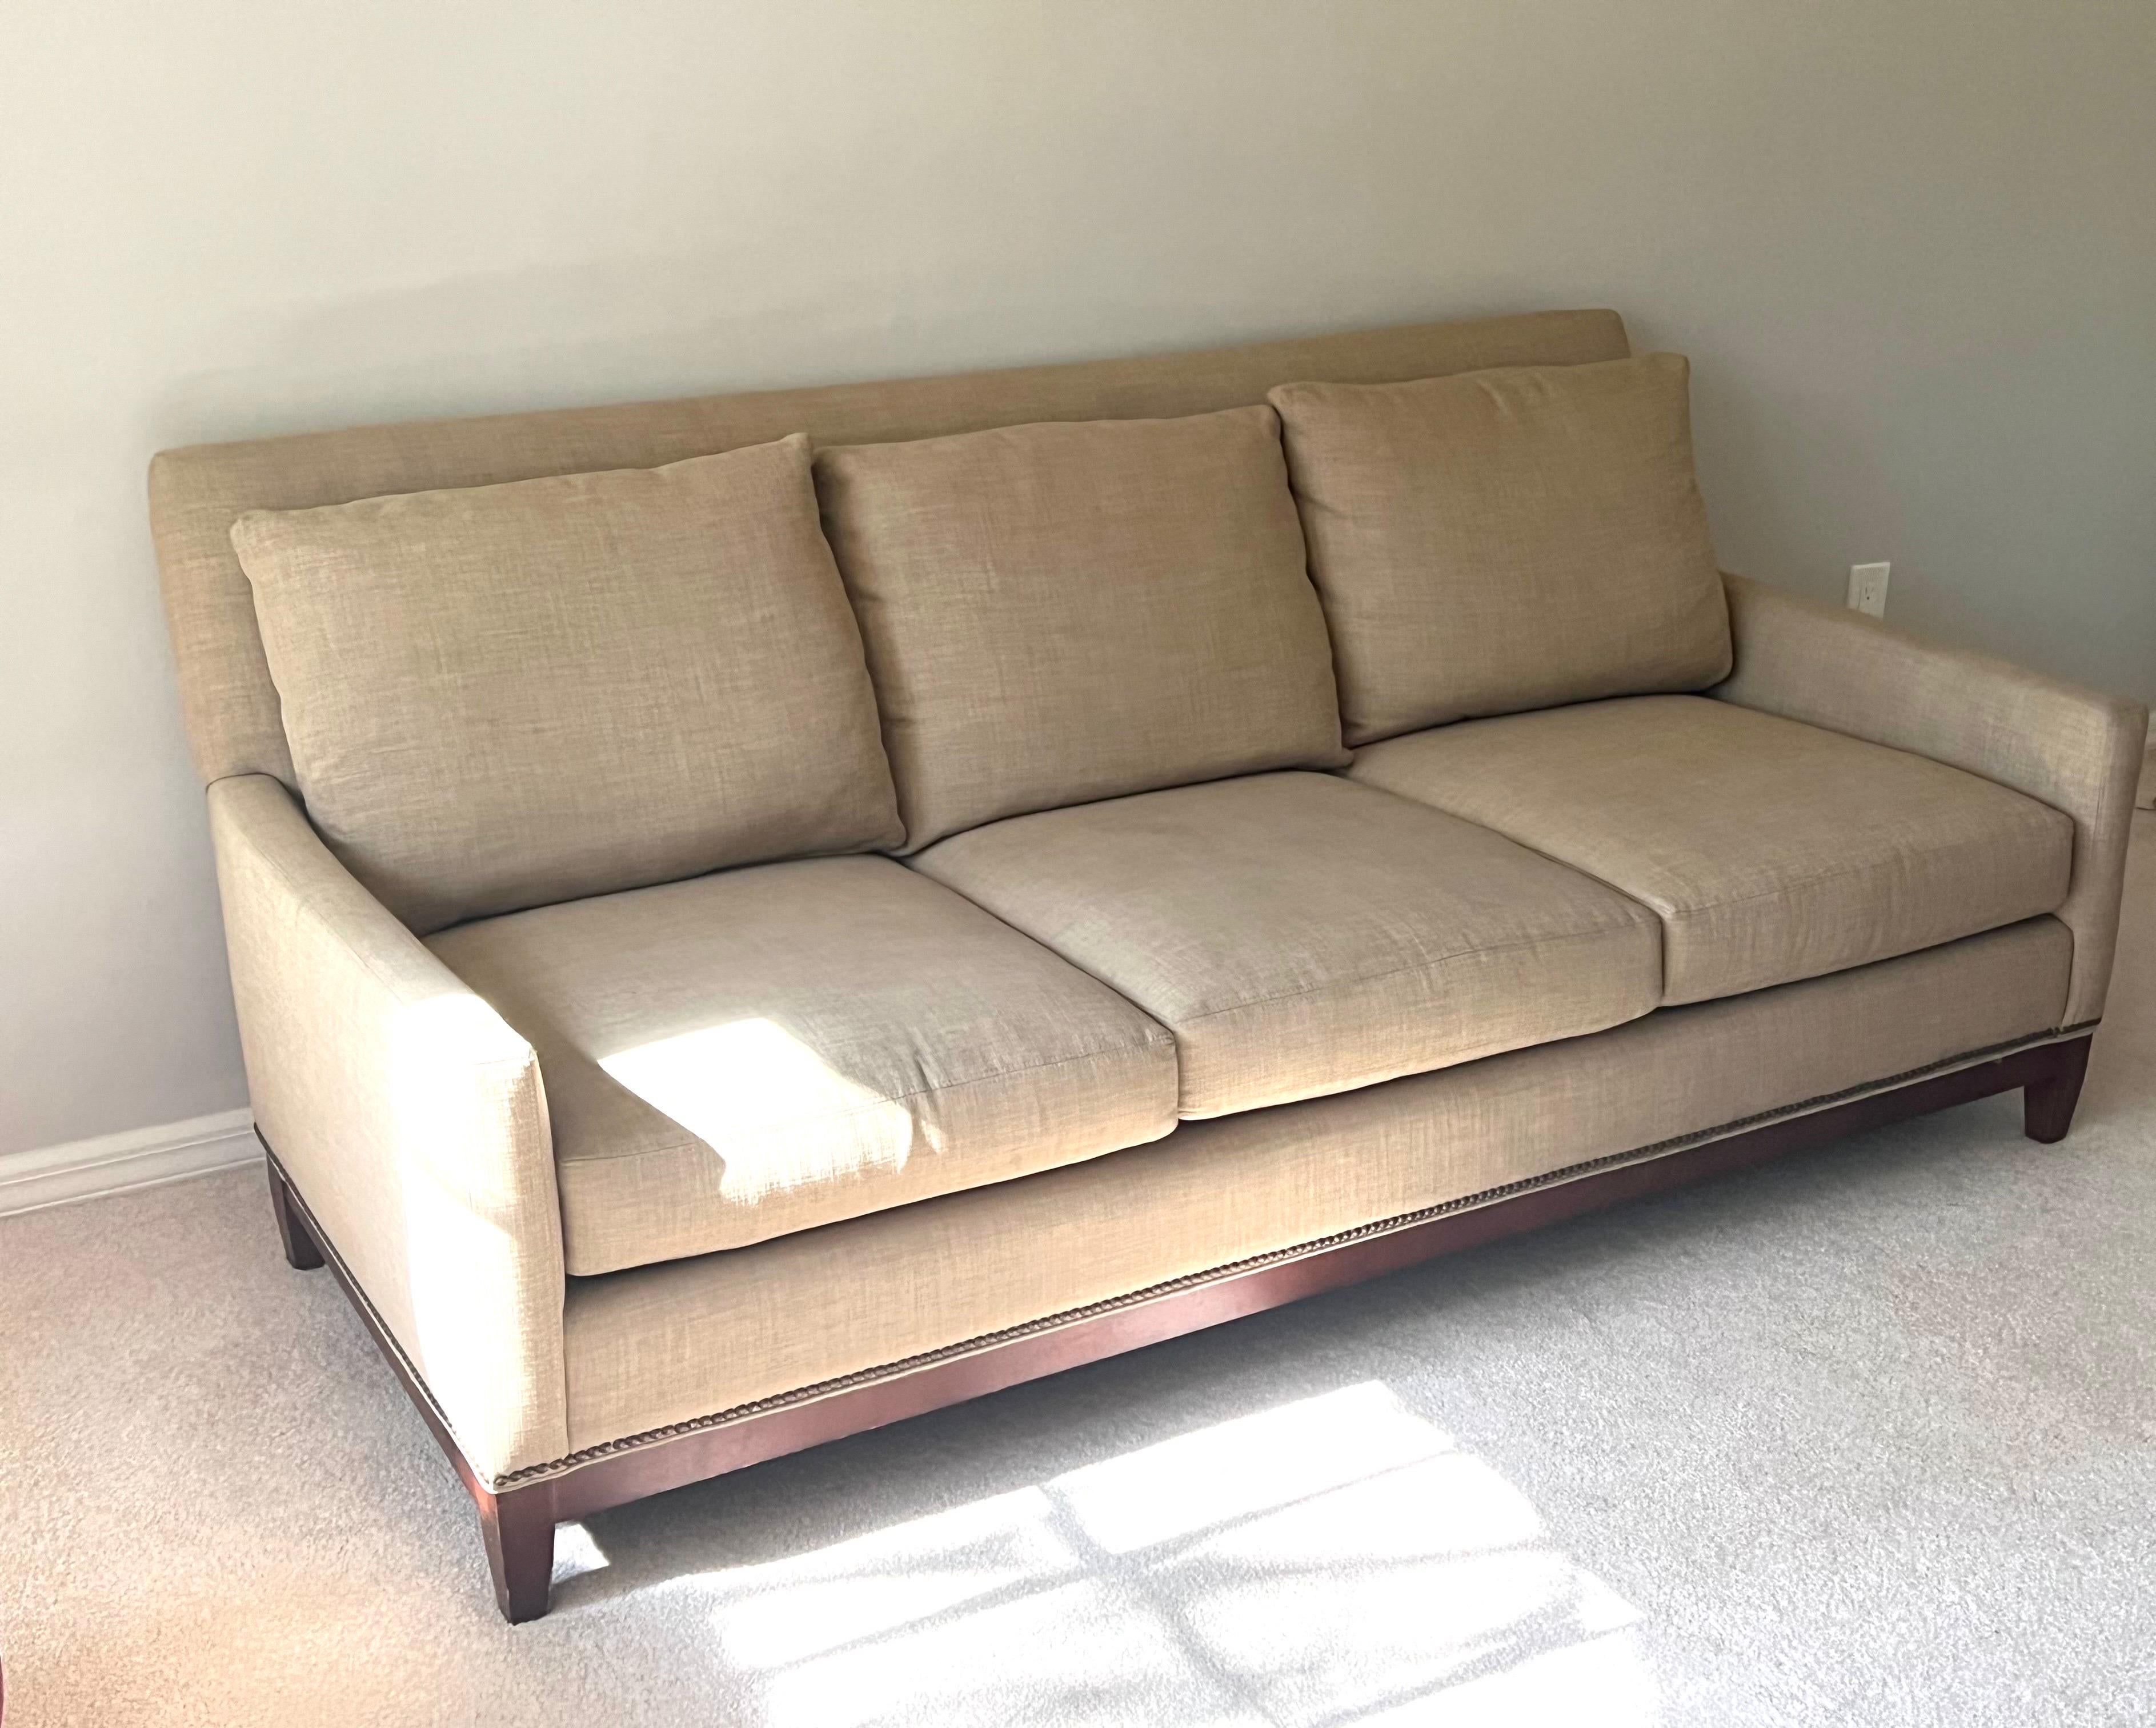 Schlichtes und elegantes französisches Sofa / Couch im Stil des wichtigsten französischen Designers des 20. Jahrhunderts, Jean Michel Frank. Das 3-Sitzer-Sofa hat eine zeitlose, perfekt ausbalancierte Form und klare Linien und steht im Einklang mit